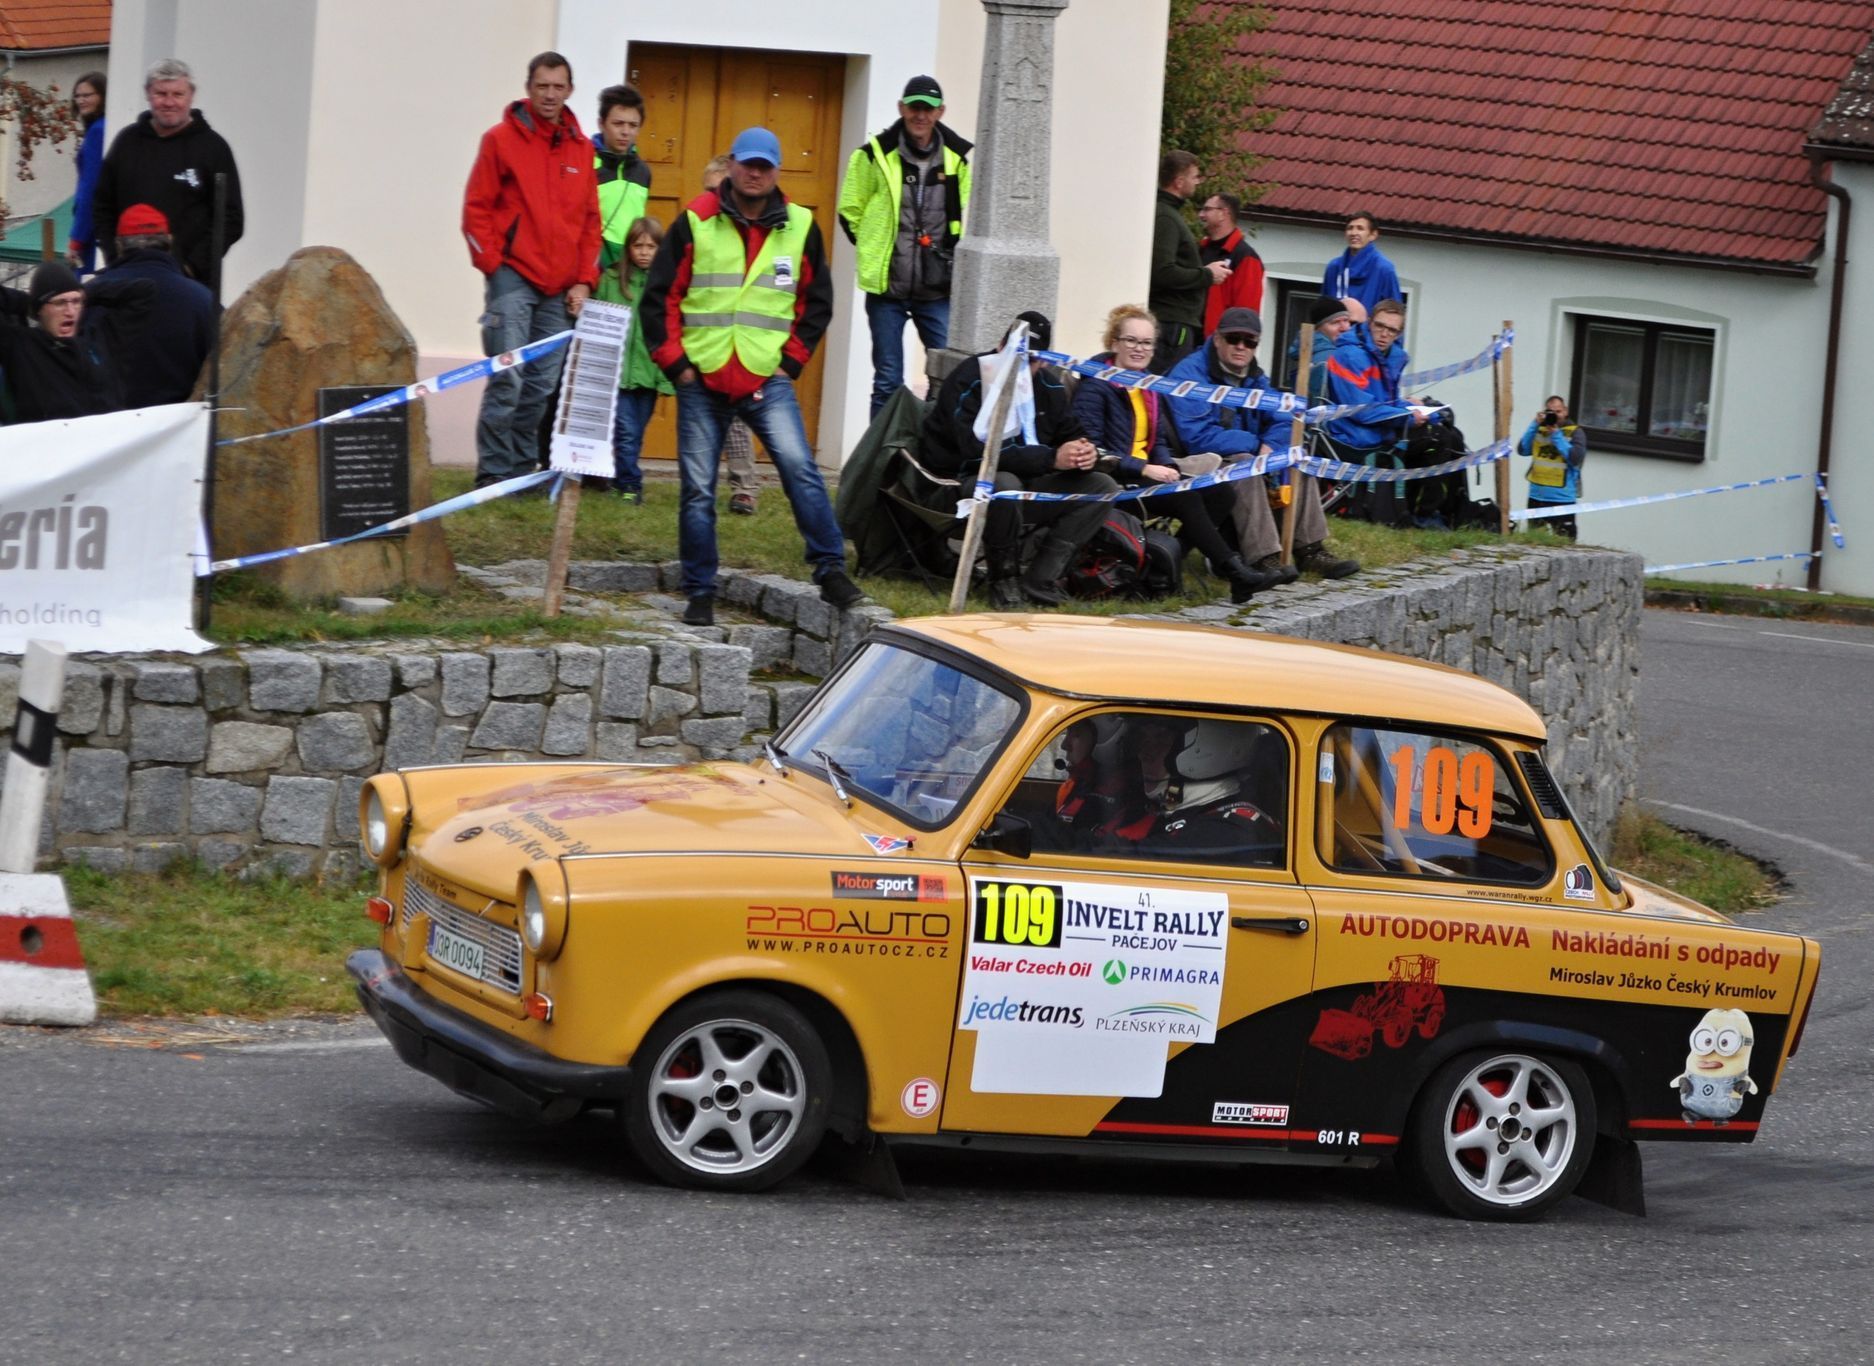 Rallye Pačejov 2020: Trabant